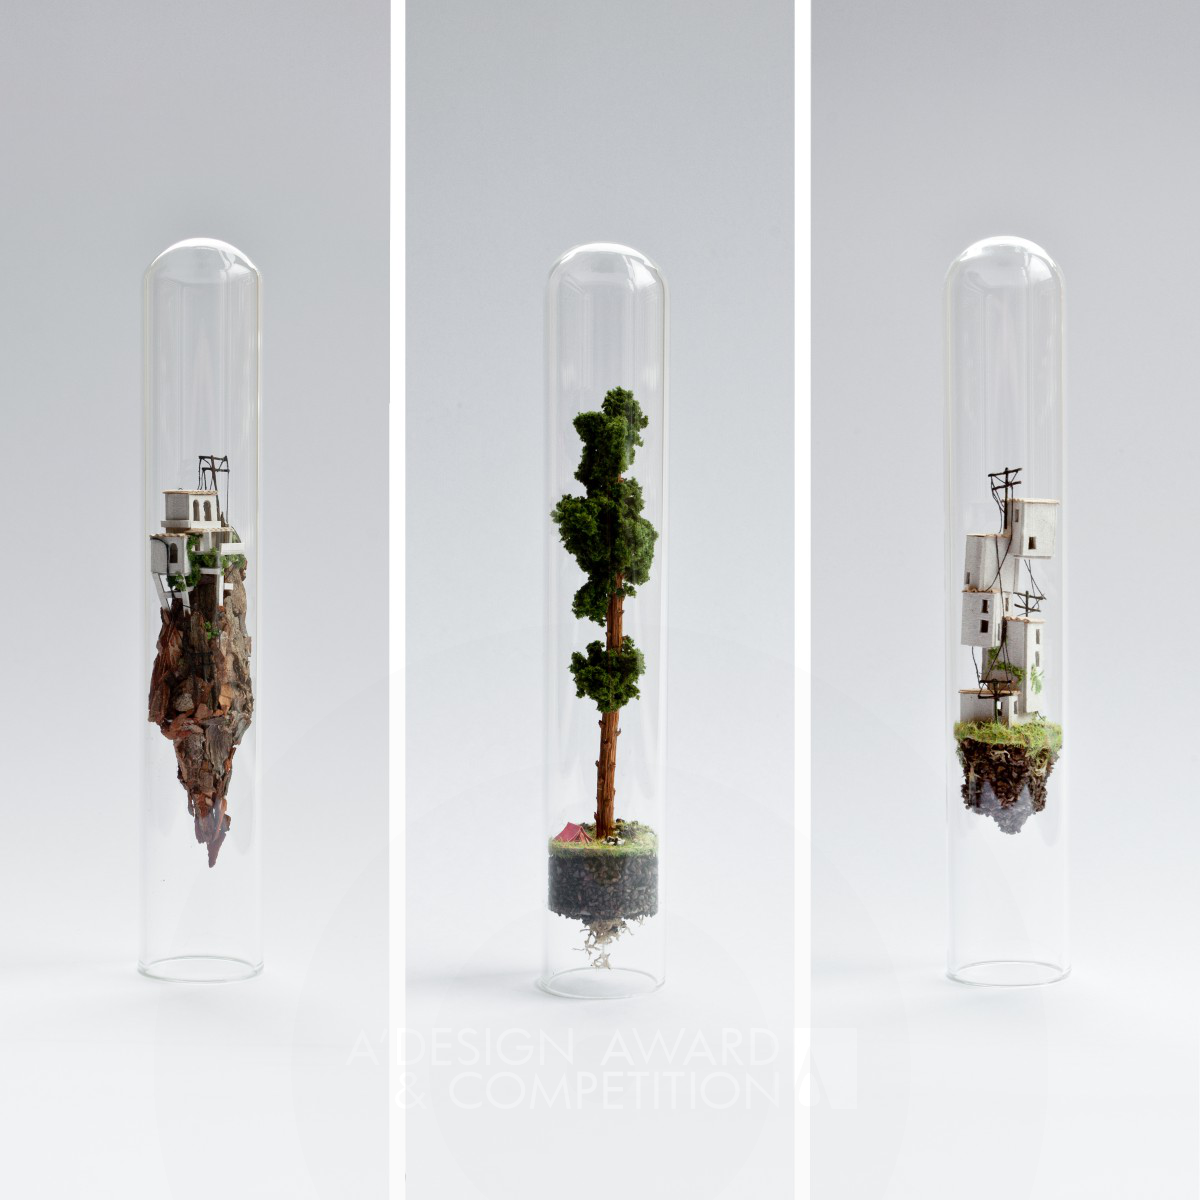 Rosa de Jong miniature sculptures in glass test tubes